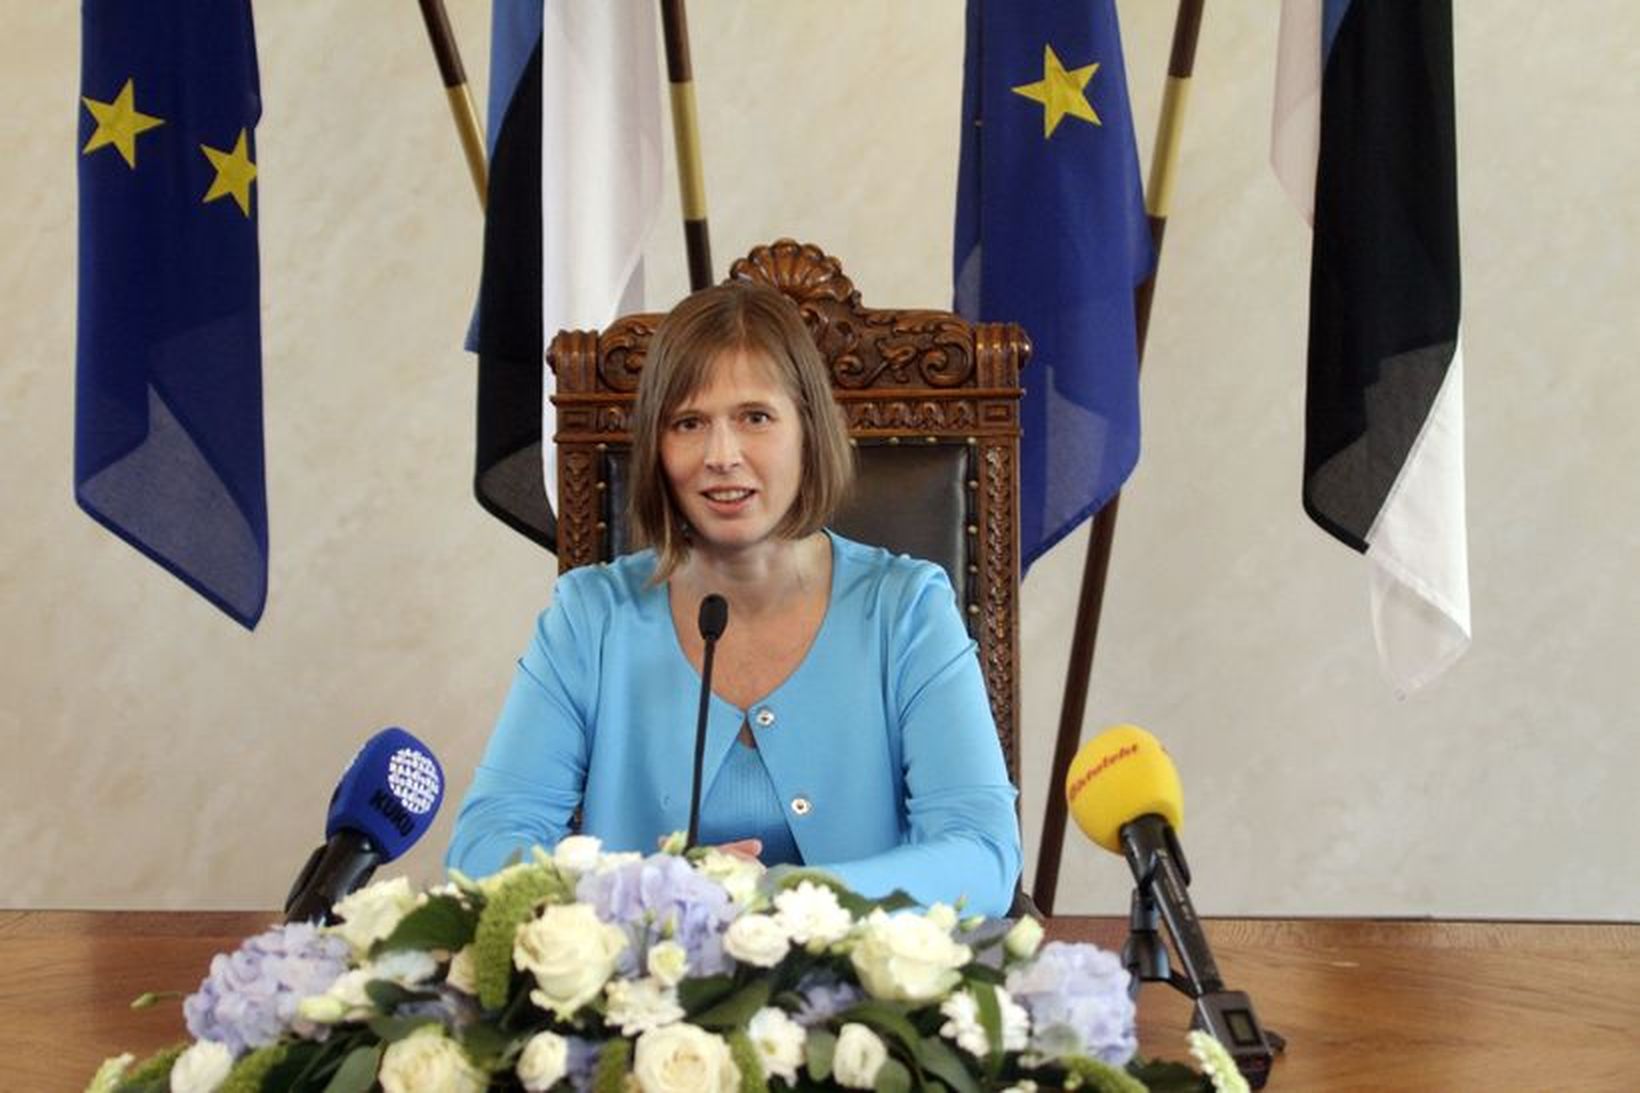 Kersti Kaljulaid er fyrsti kvenkyns forseti Eistlands.